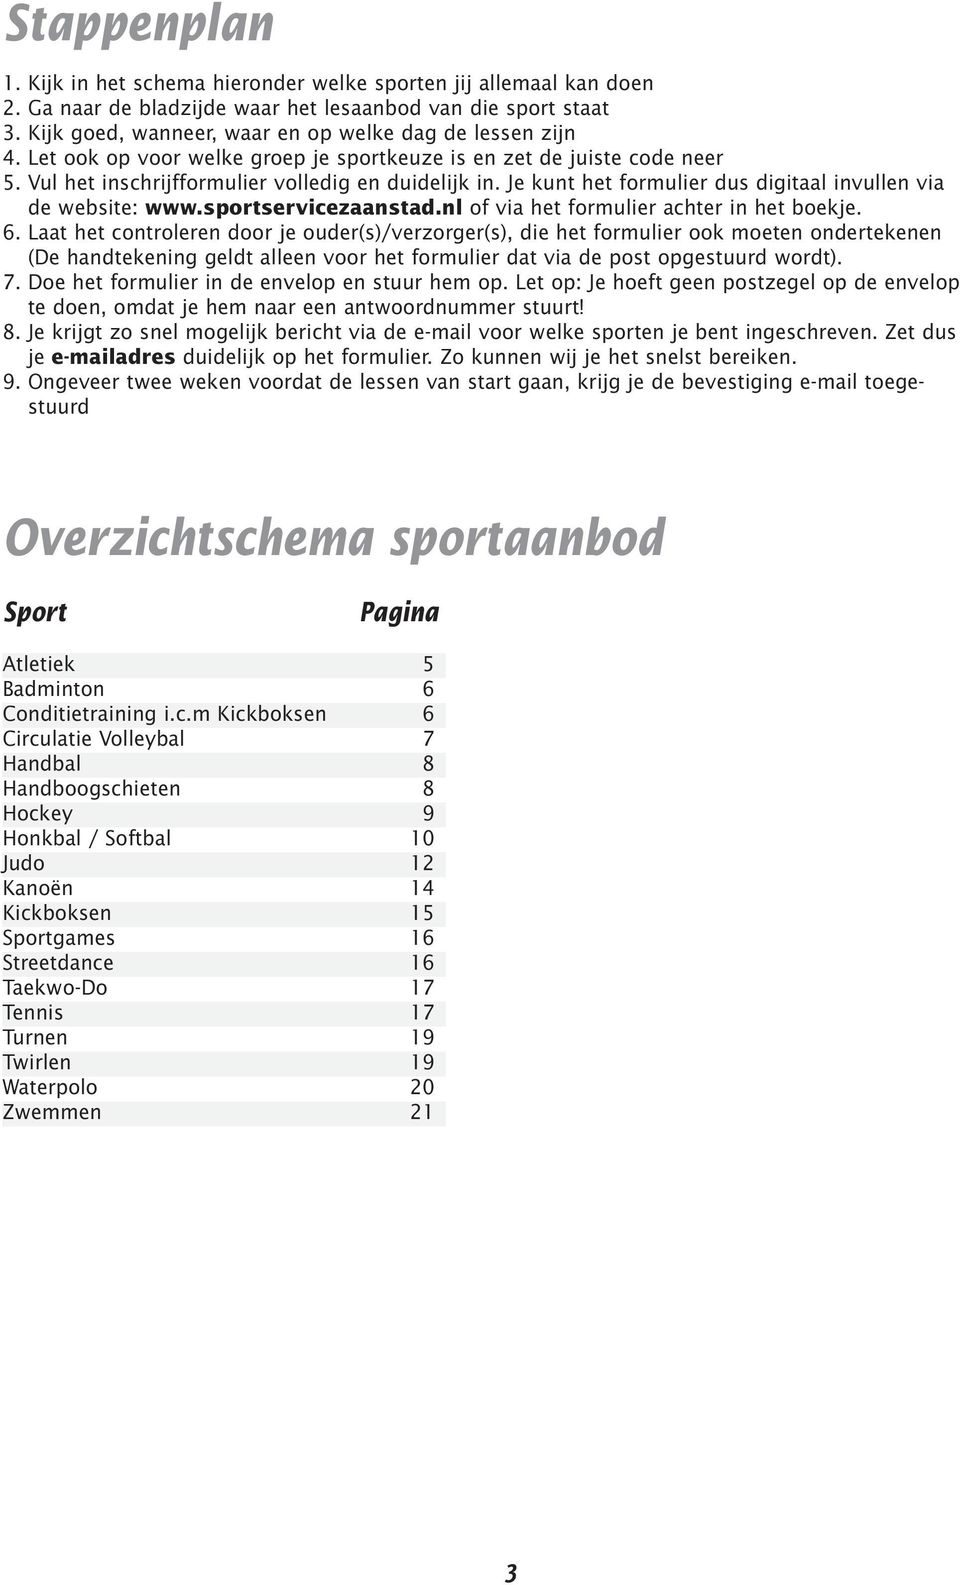 sportservicezaanstad.nl of via het formulier achter in het boekje. 6.